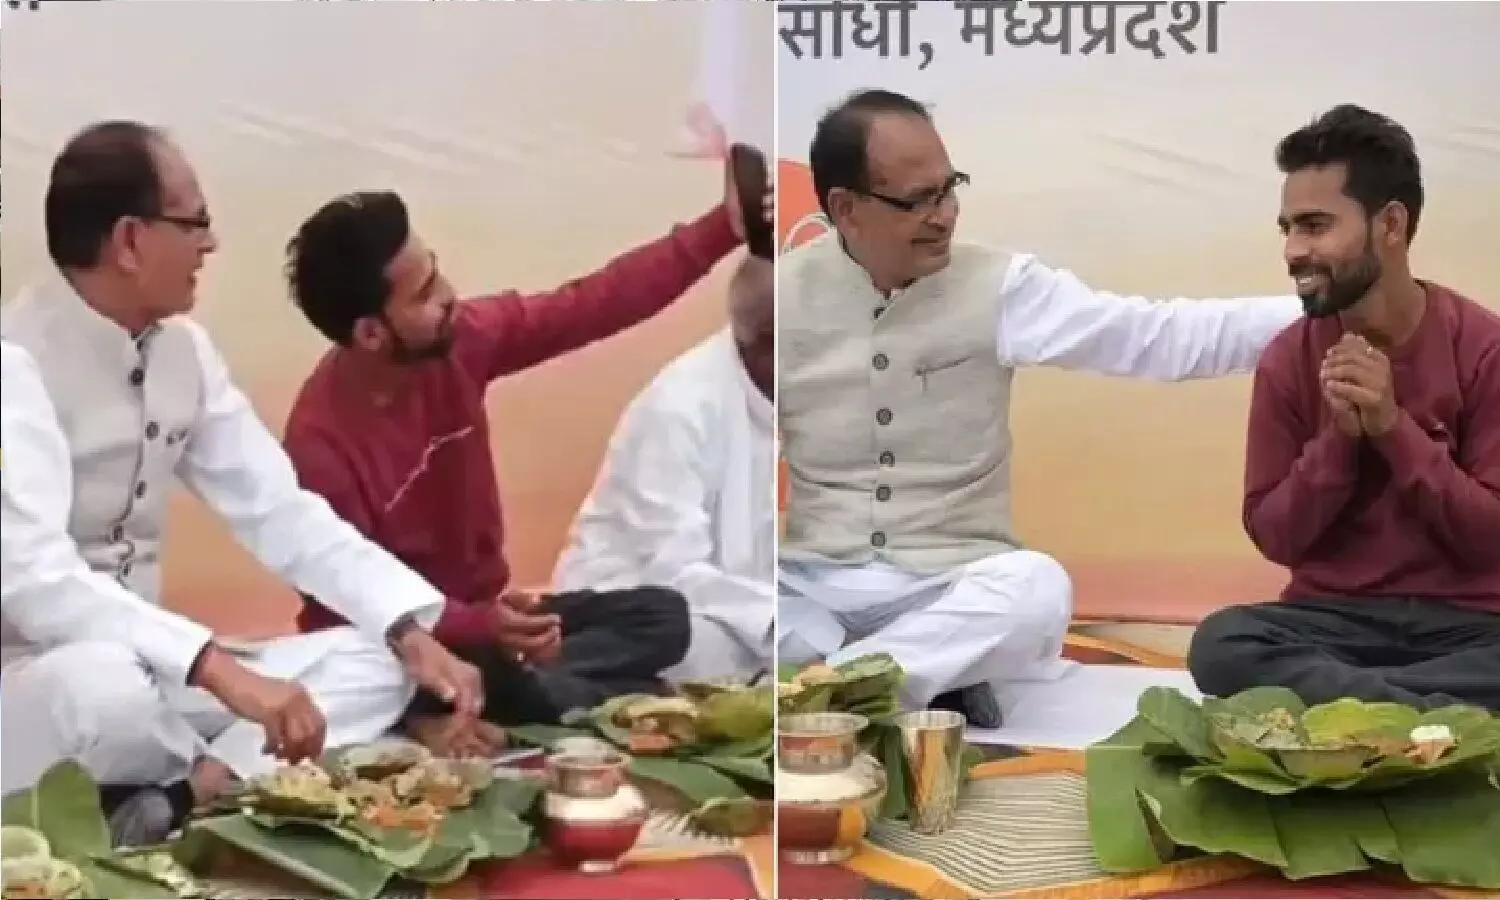 एमपी सीएम शिवराज सिंह चौहान ने लकड़ी चोर के साथ बैठकर खाना खाया, उसकी पीठ थपथपाई, सेल्फी भी खिंचवाई